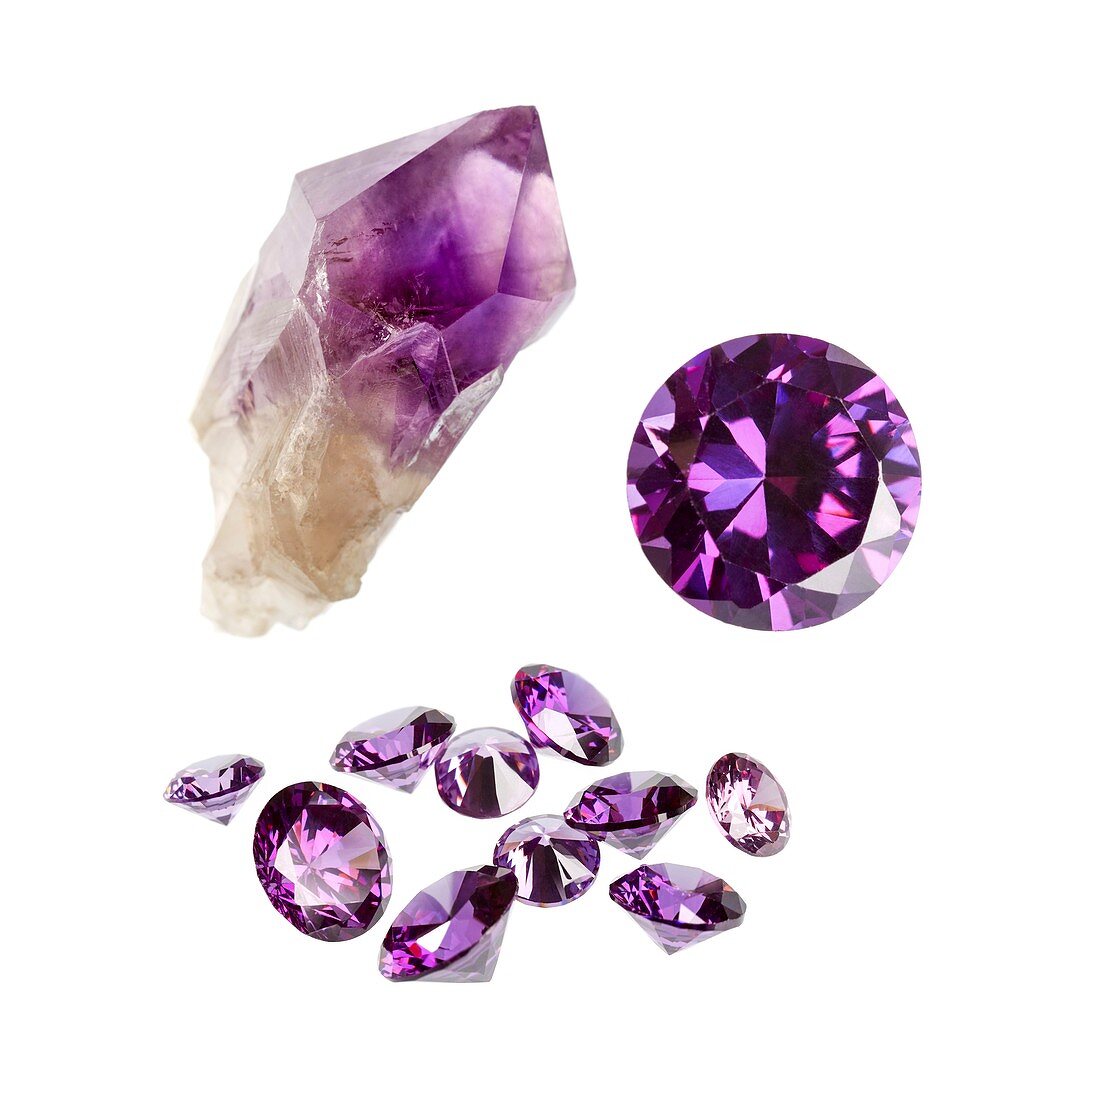 Amethyst gemstones and crystal